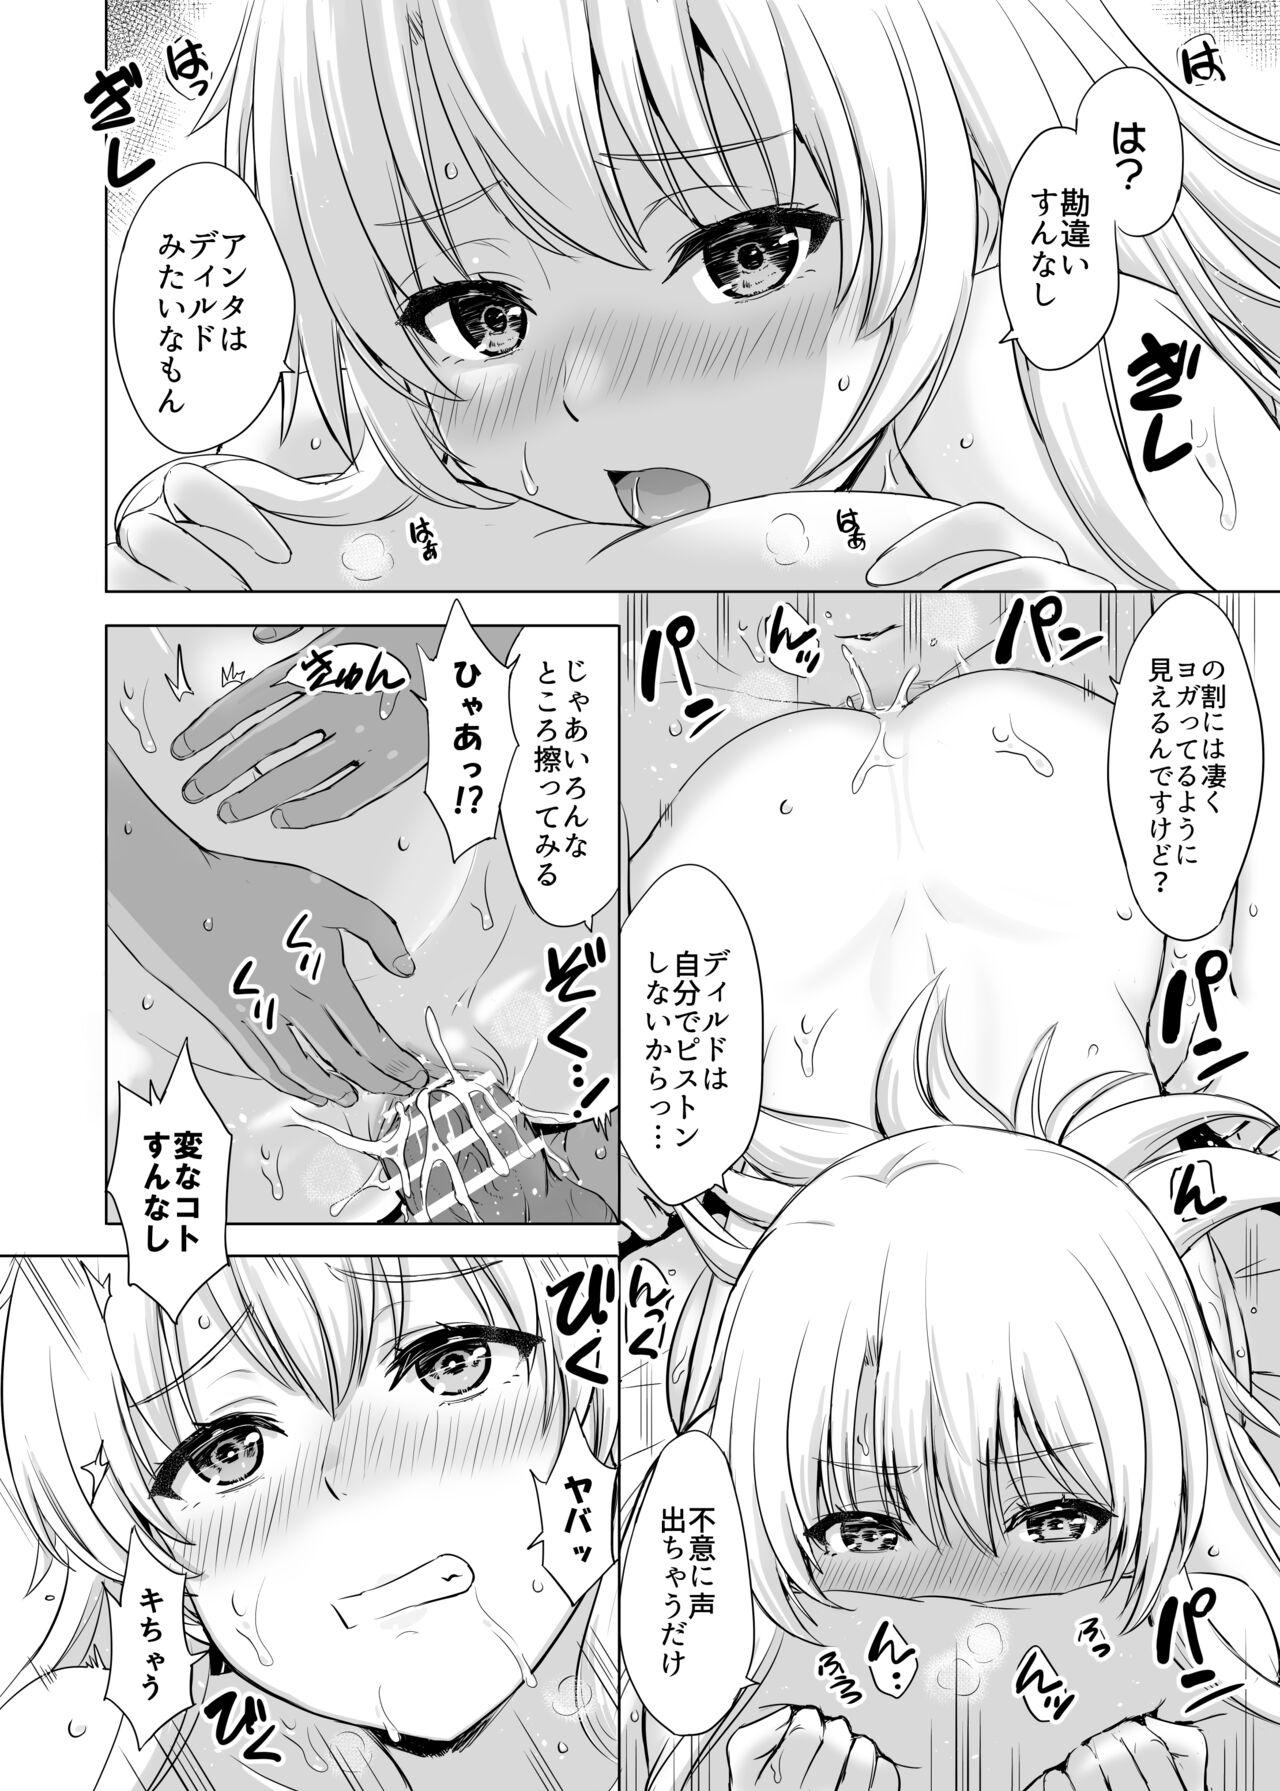 Bikini Aashi-san Manga Sono 1 - Yahari ore no seishun love come wa machigatteiru Big Black Cock - Page 2